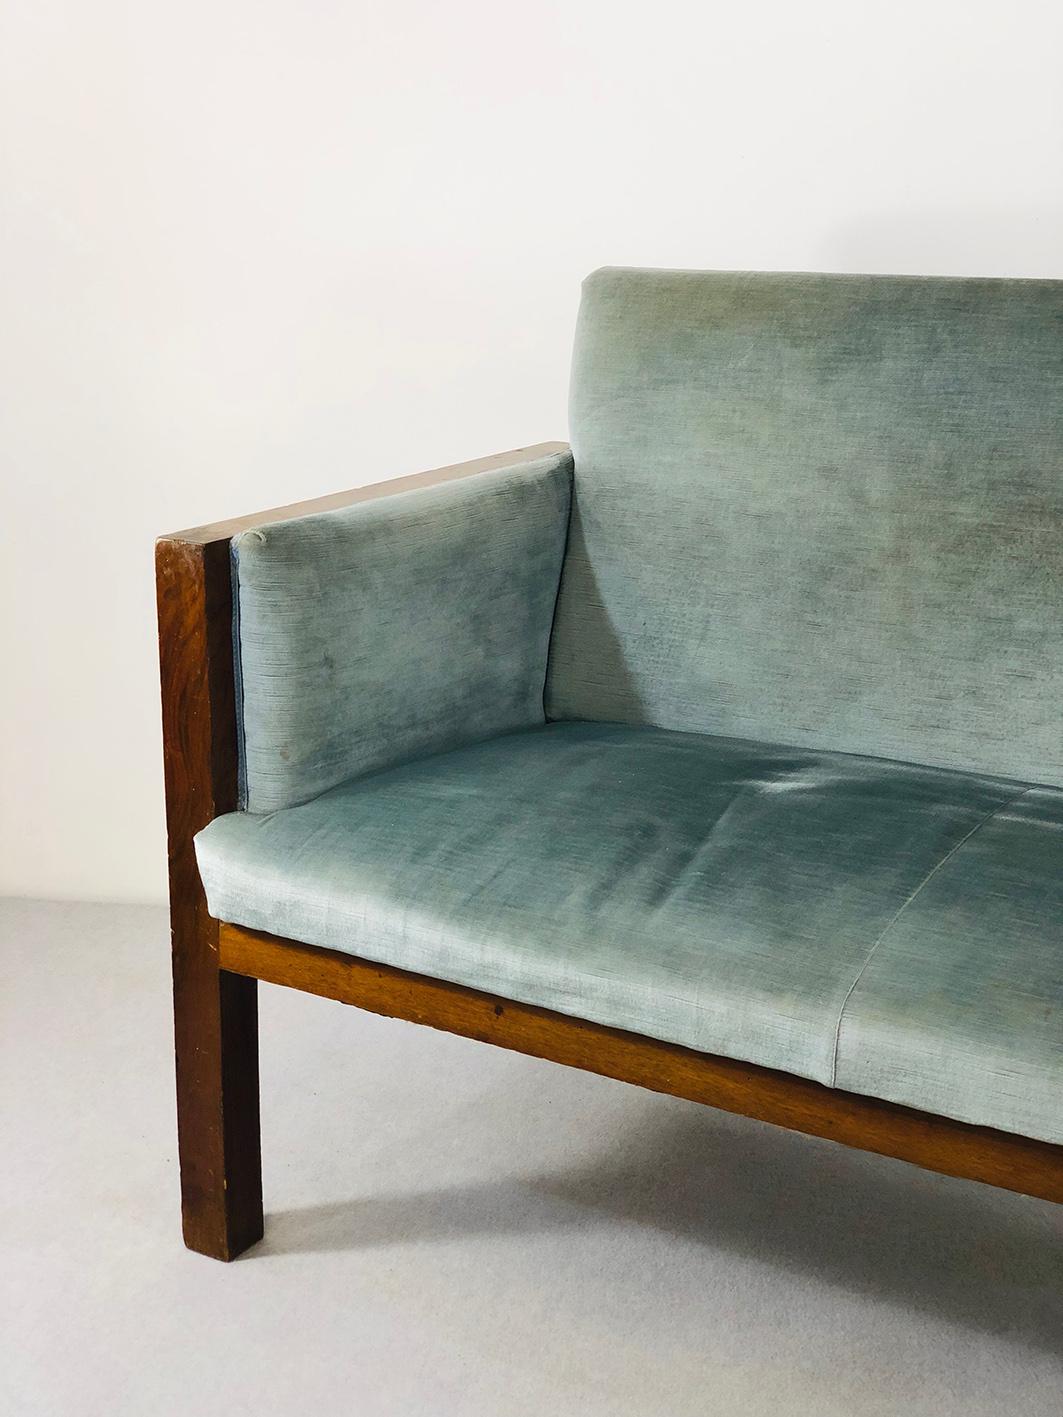 Schönes Dreisitzer-Sofa aus dem Jahr 1940, das Franco Albini zugeschrieben wird, in Palisanderholz.
Der Stoff für die Polsterung des Sofas Franco Albini verwendet wird, ist original der Zeit, feine Samt in Zuckerpapier Farbe. Er ist ideal, um ein